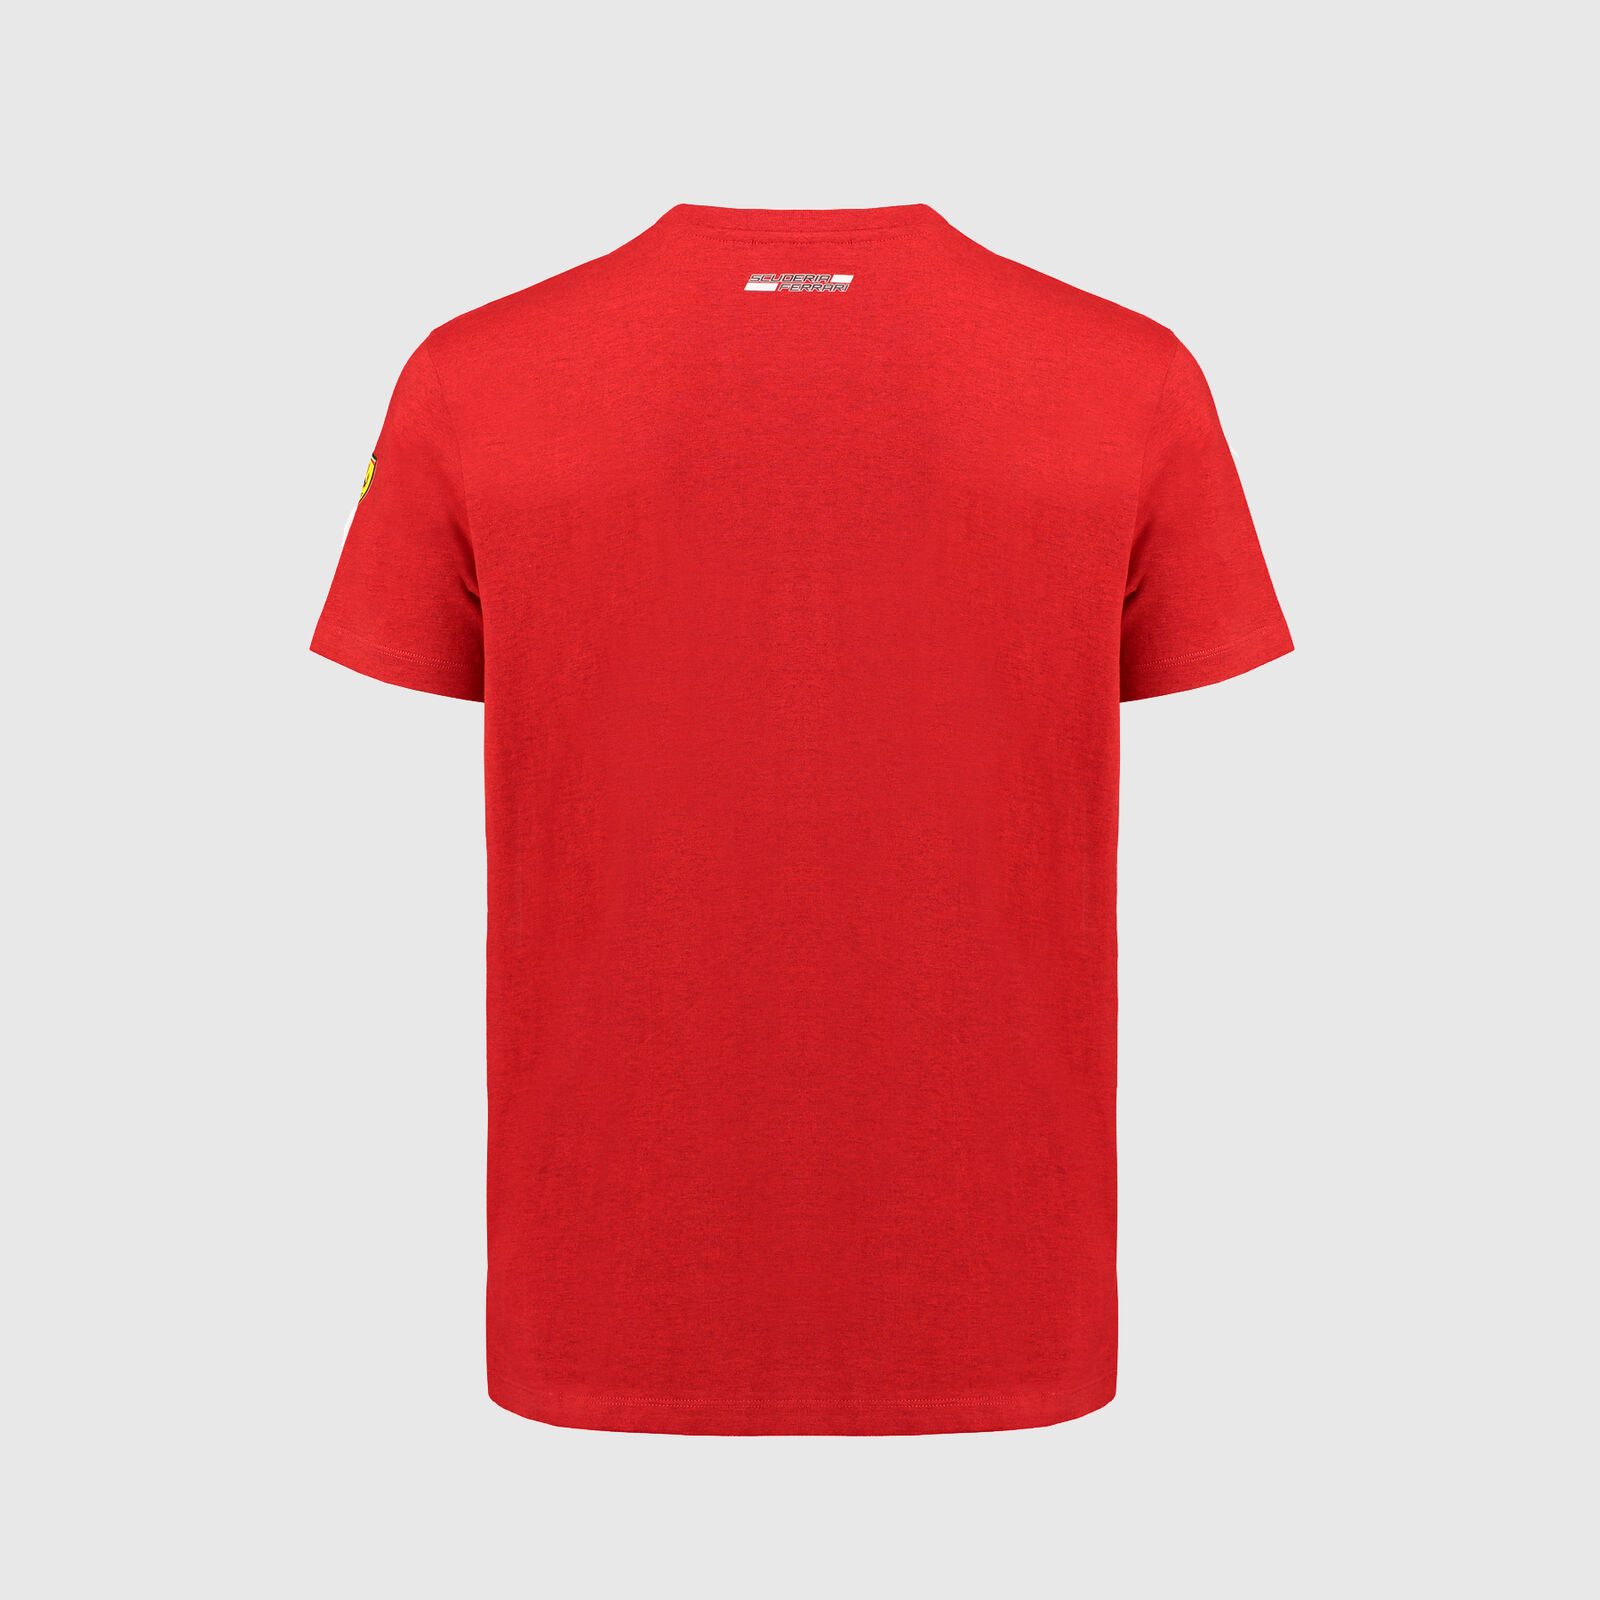 Camiseta Scuderia Ferrari Oficial Cuello V. Color rojo